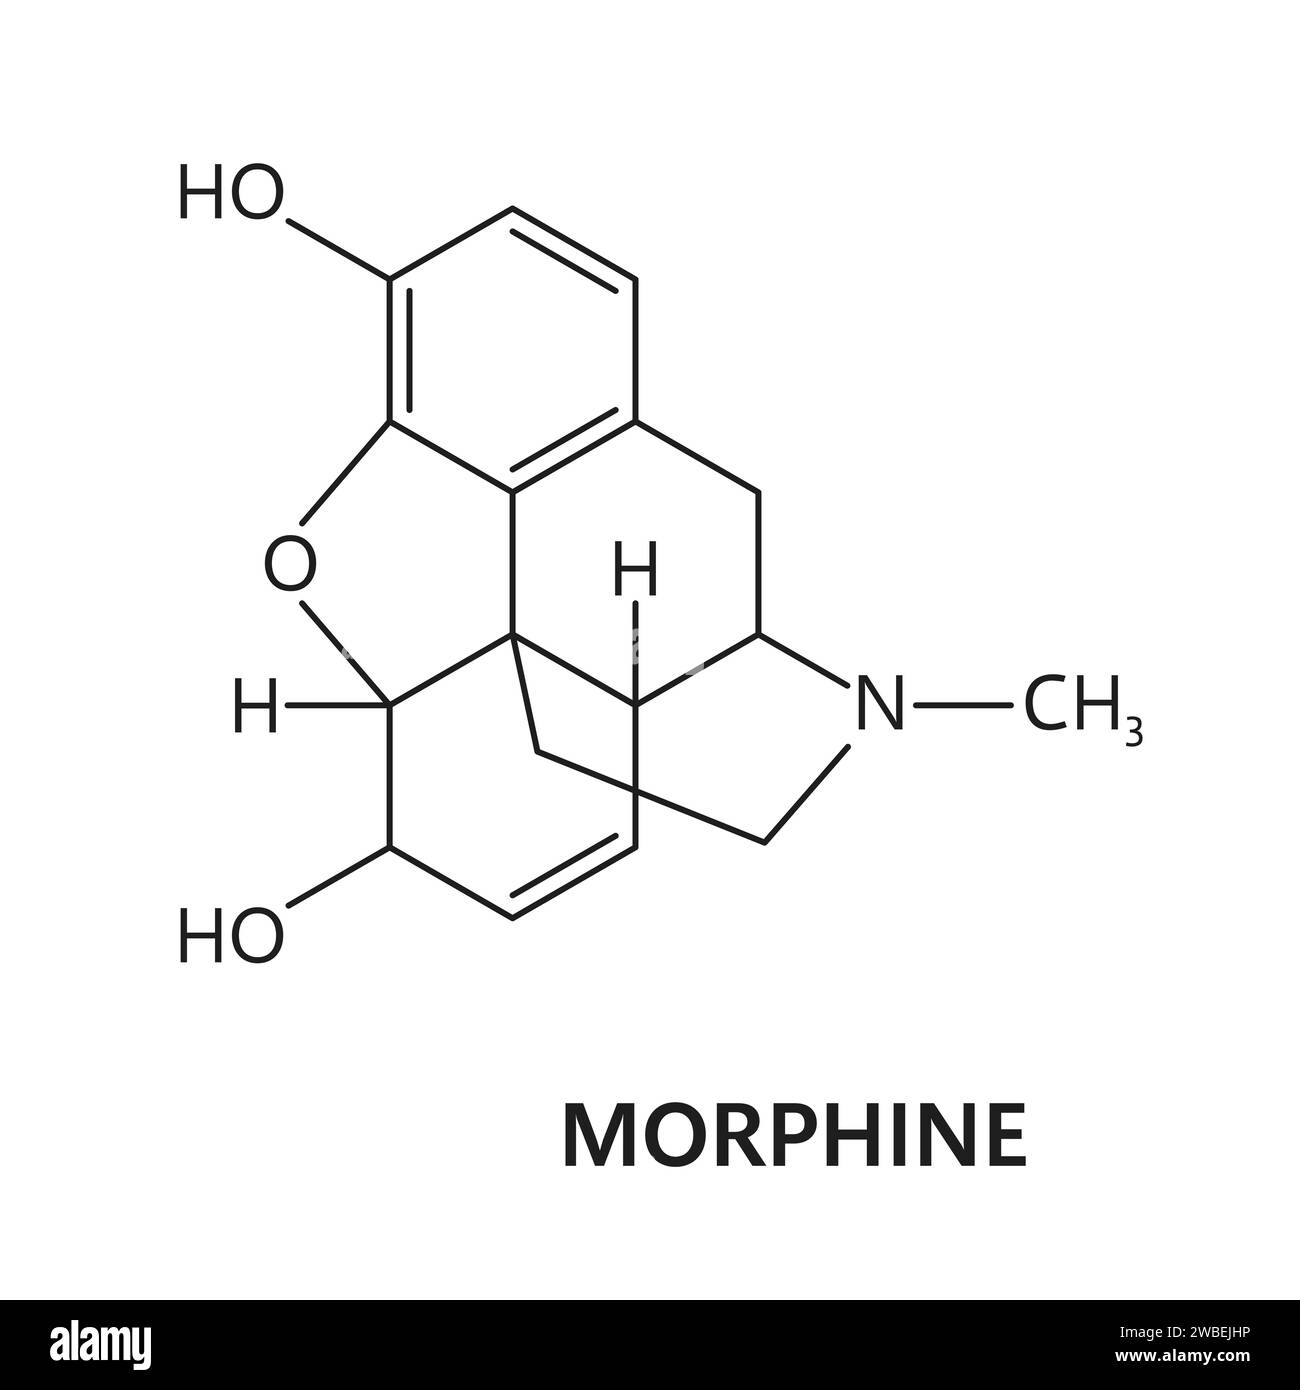 Molécule et formule de morphine médicamenteuse, structure chimique du narcotique opiacé, modèle vectoriel. Opioïde synthétique ou organique et substance stimulante interdite, formule morphinique et structure moléculaire Illustration de Vecteur